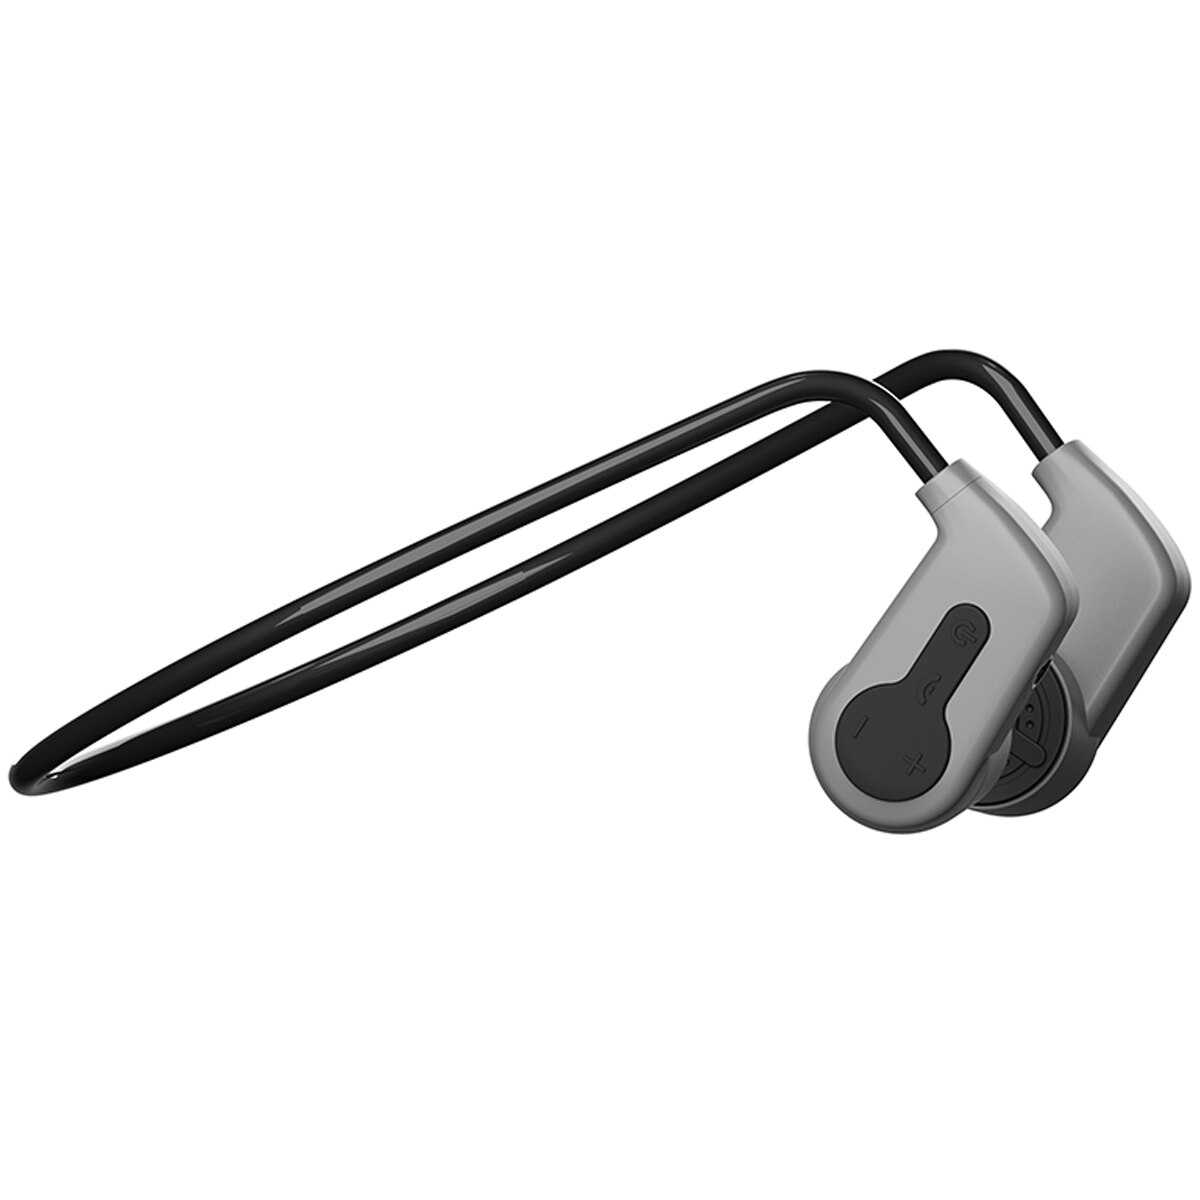 Trådløs knogle lednings headset ipx 8 vandtæt  mp3 hovedtelefoner bluetooth 16g med mikrofon  mp3 svømning sports øretelefoner øretelefoner  k3